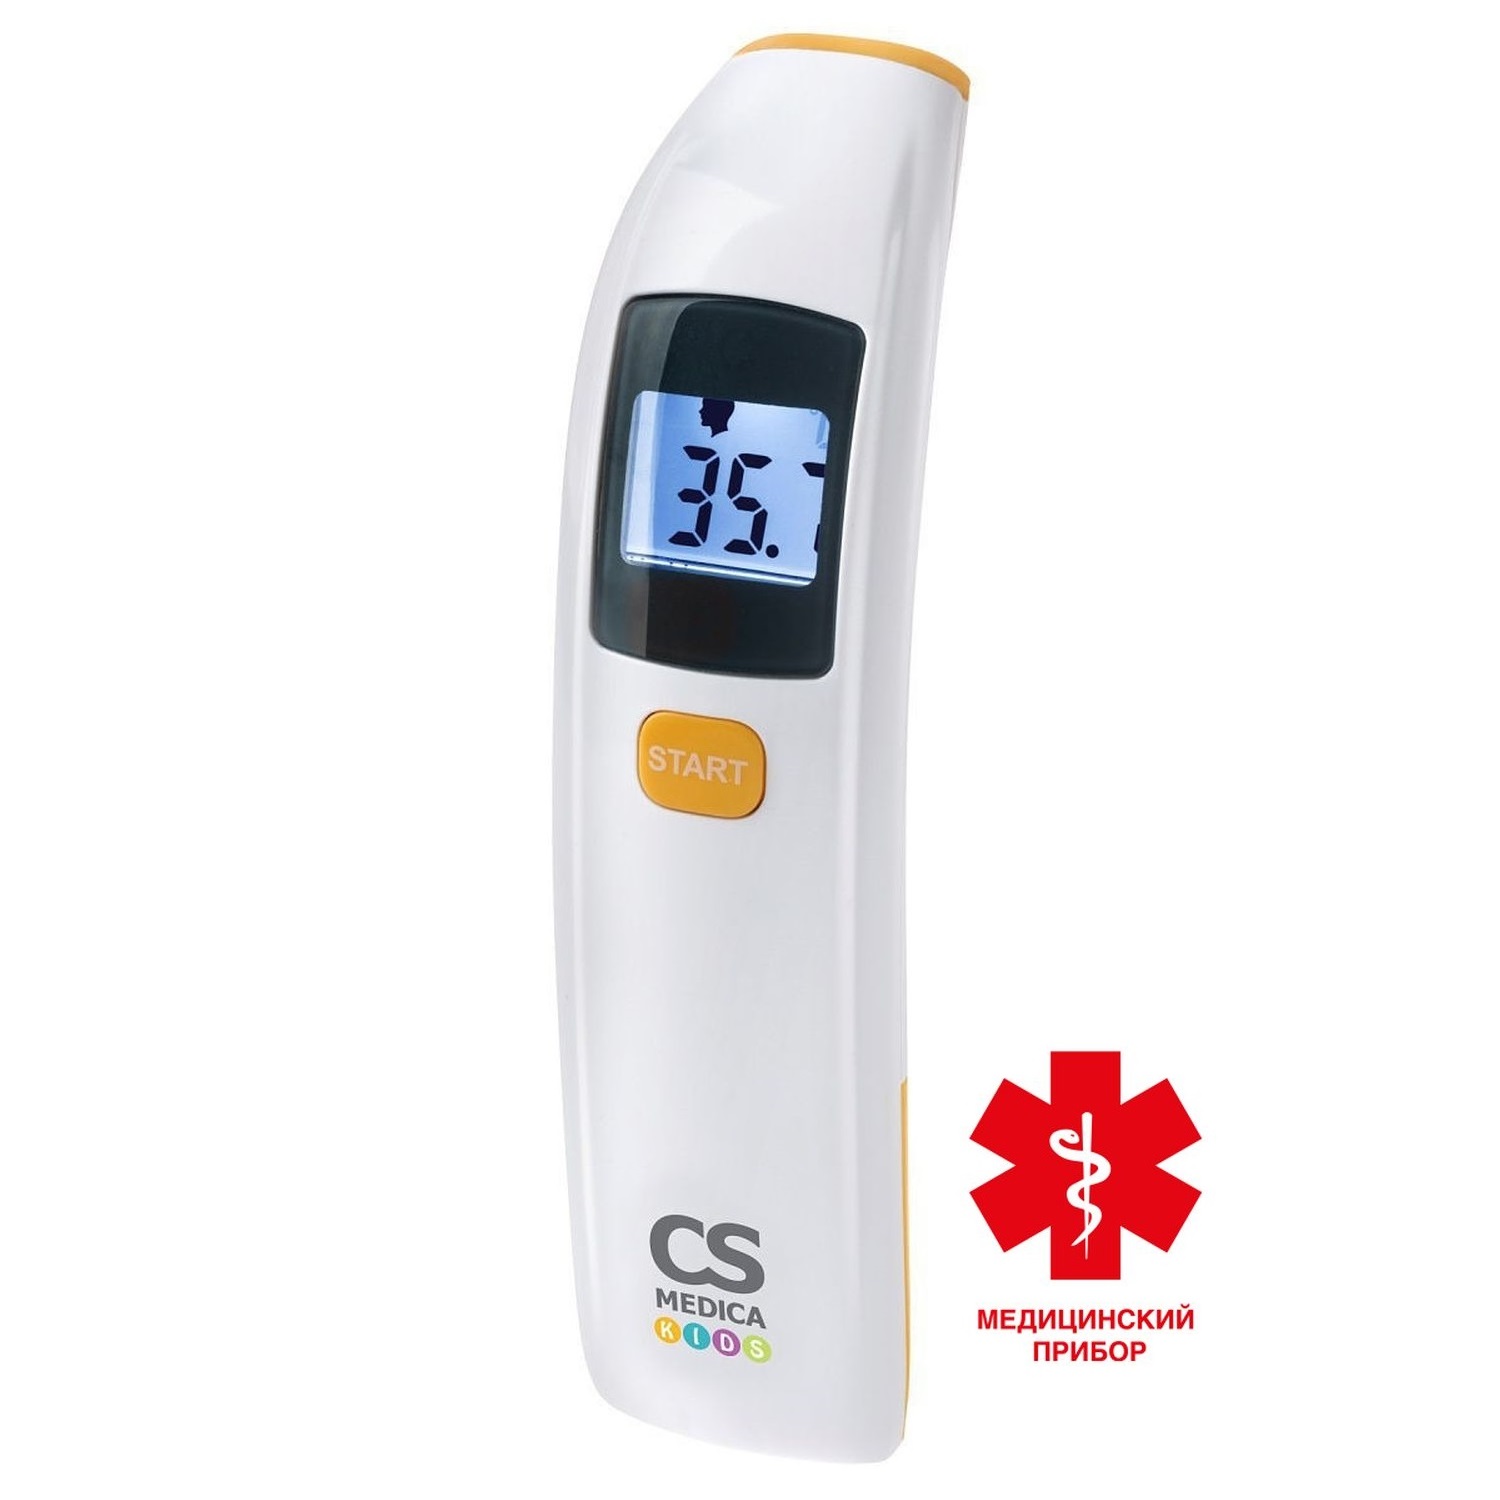 СиЭс Медика термометр электронный медицинский бесконтактный CS-88